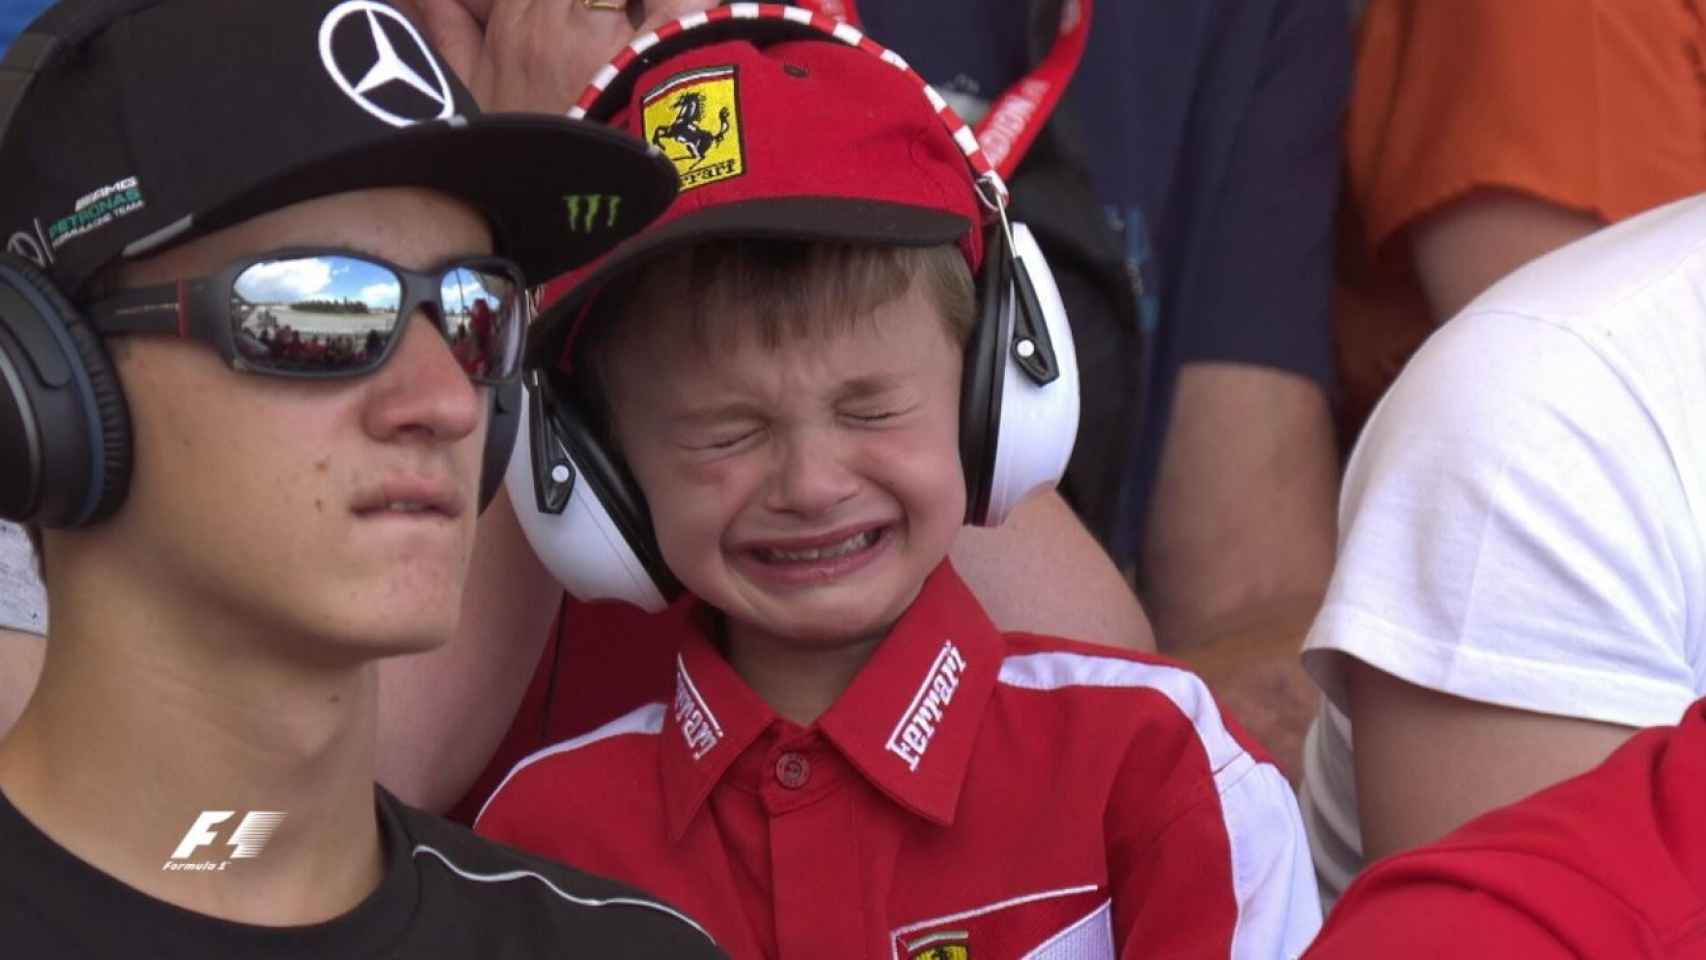 Las emotivas lágrimas del niño que quiere ser Raikkonen